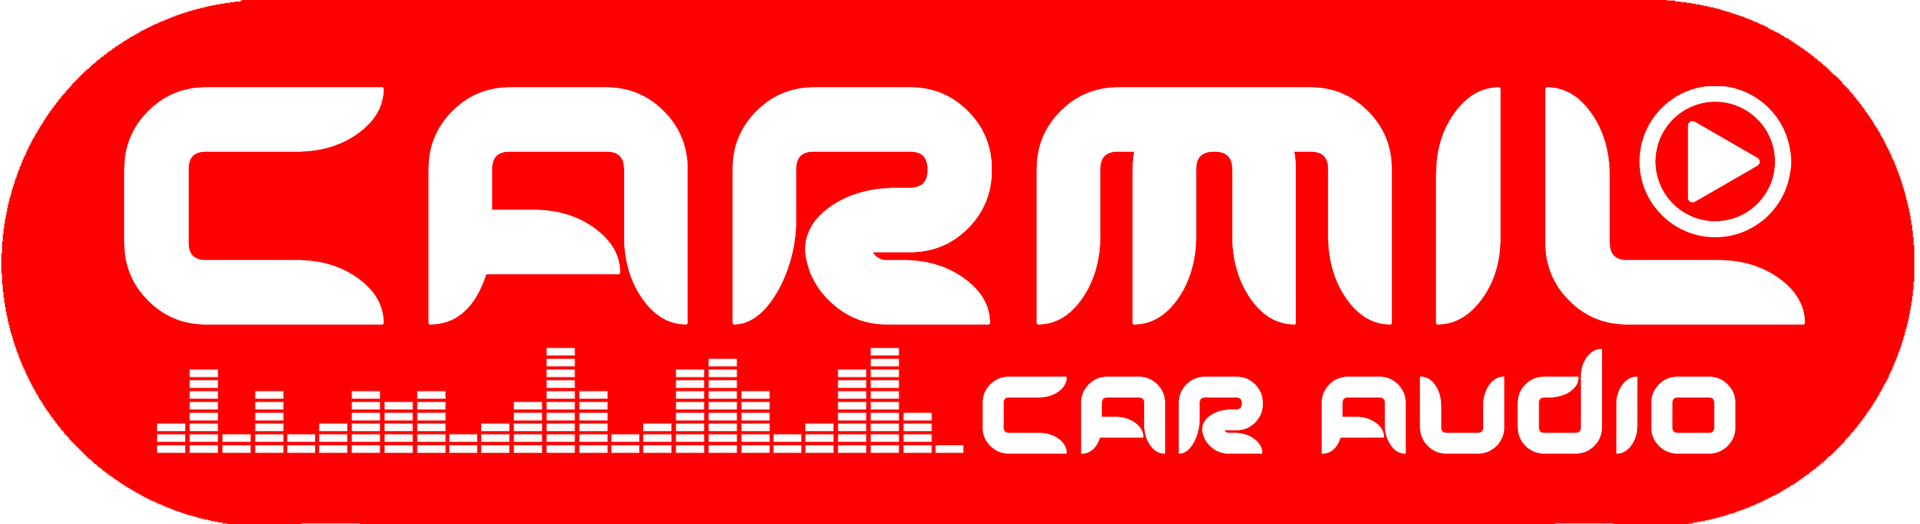 Carmil Car Audio